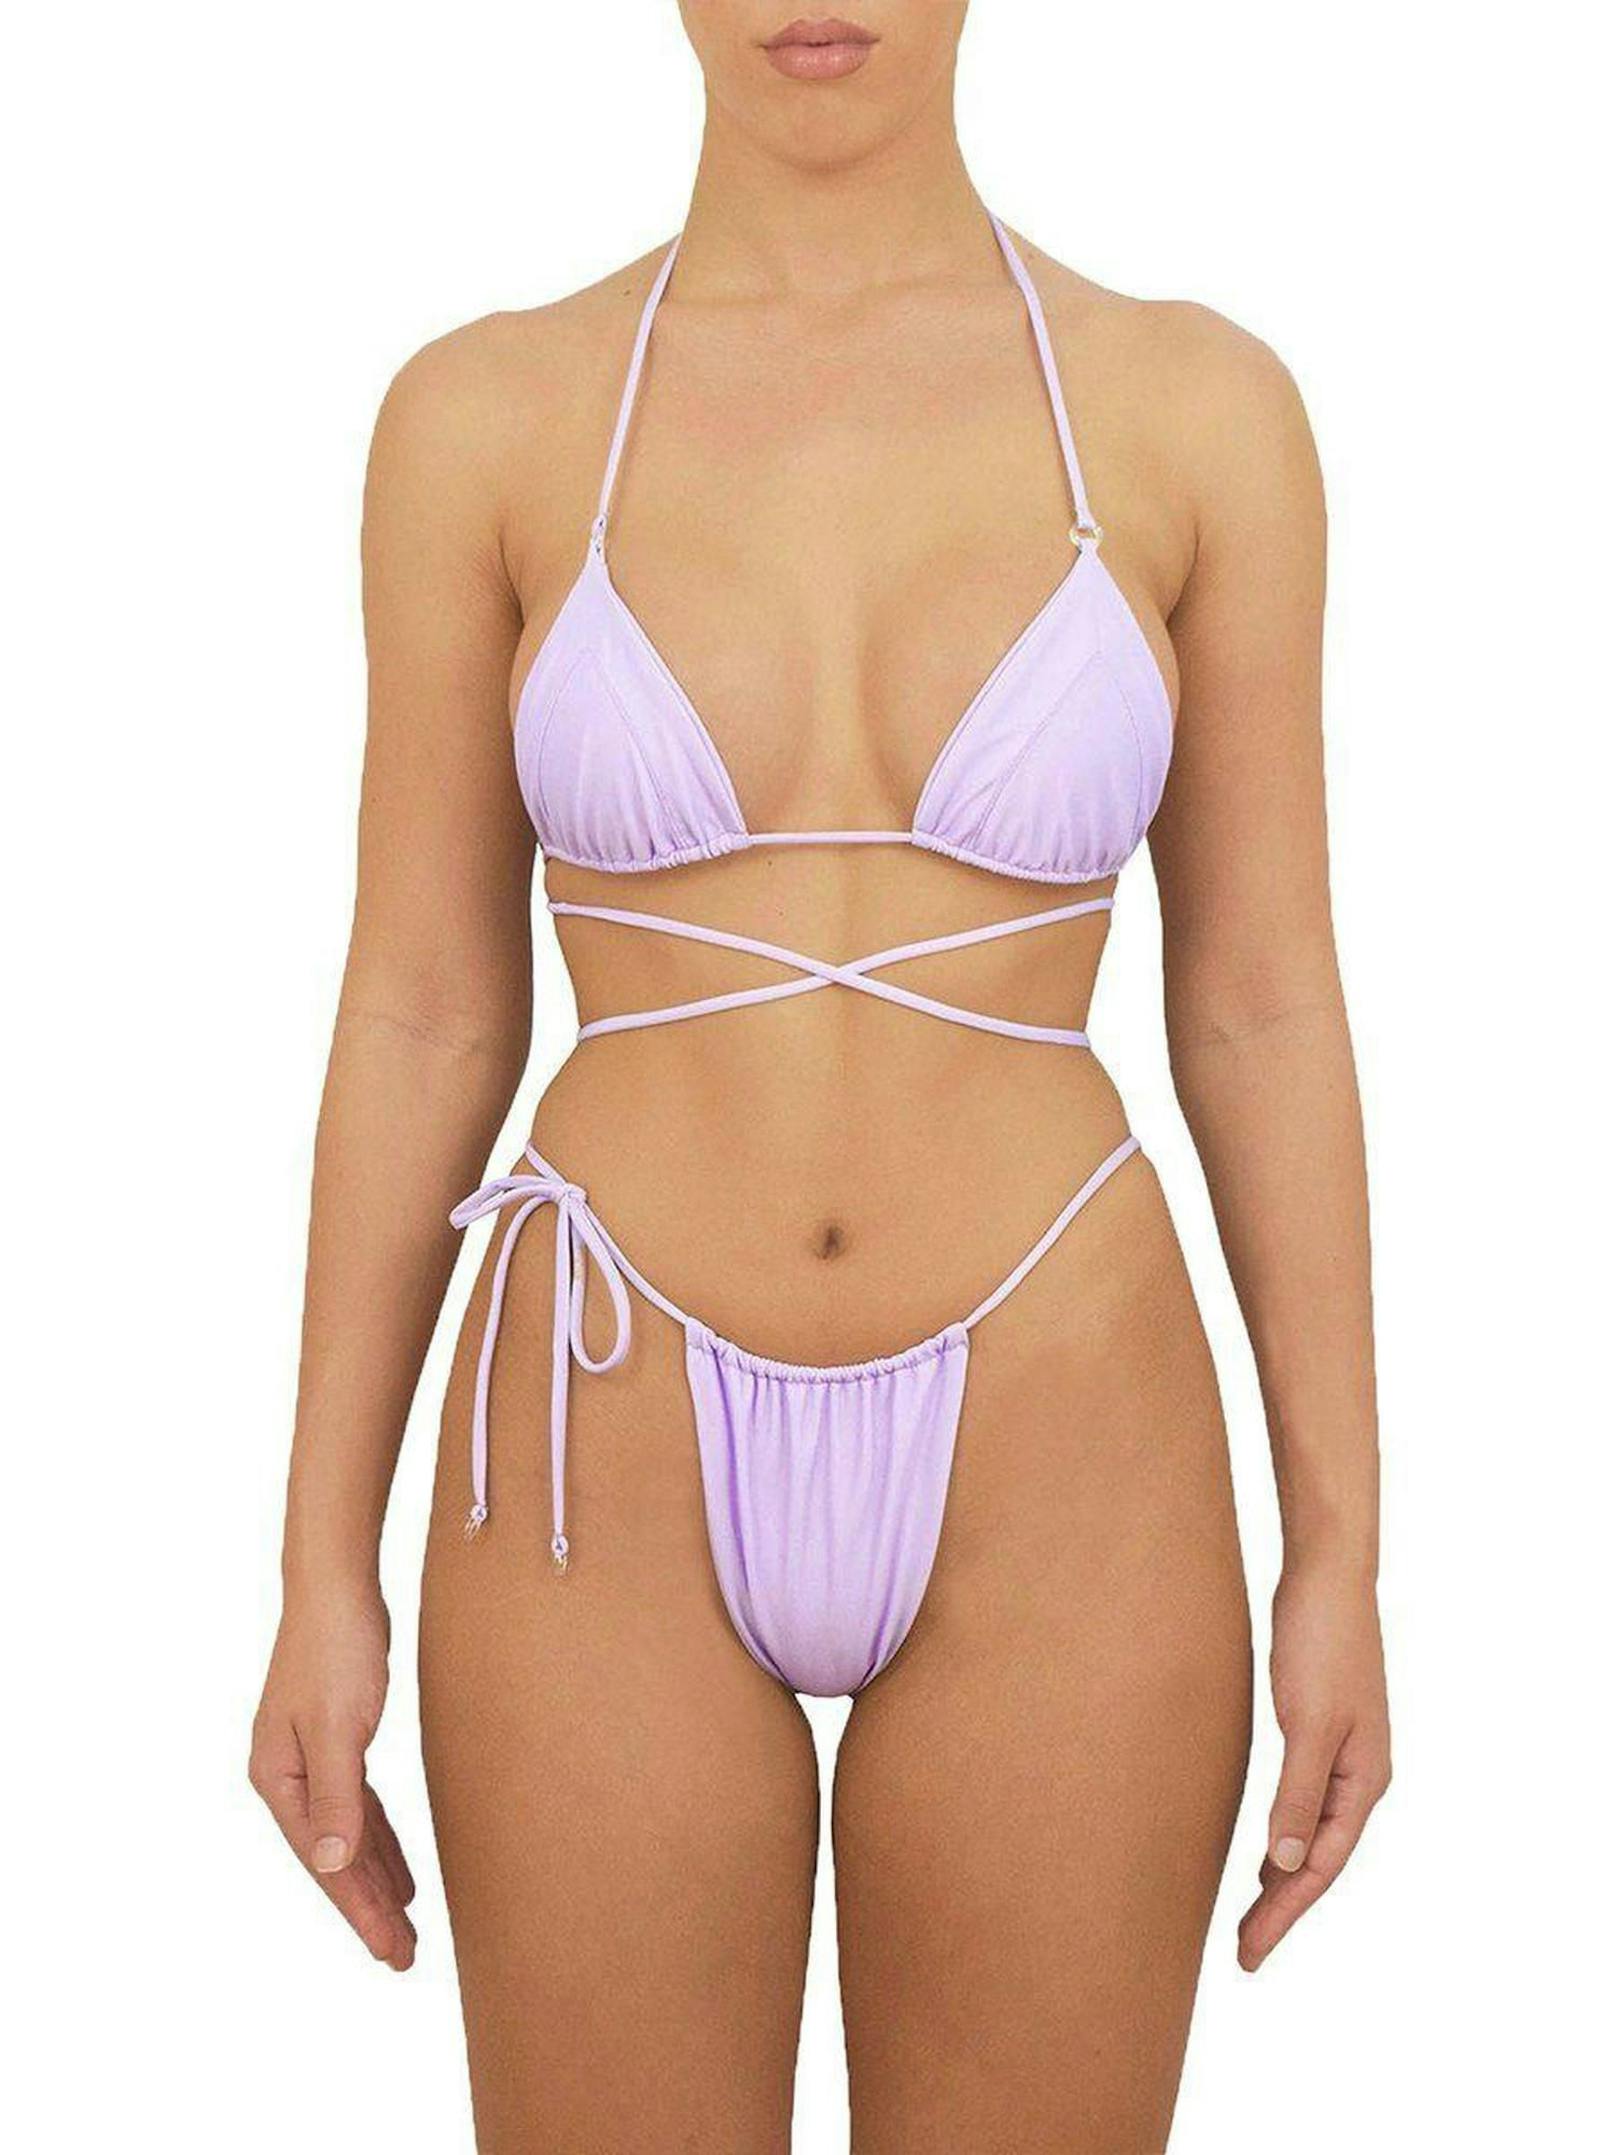 Diese Variante ist in vielen anderen Farben und Mustern erhältlich: Bikini Hose "Swept Away" um 60,95 Euro von <a href="https://heartofsunswim.com/collections/all-bottoms/products/swept-away-bottom-violeta">Heart of Sun Swim</a>